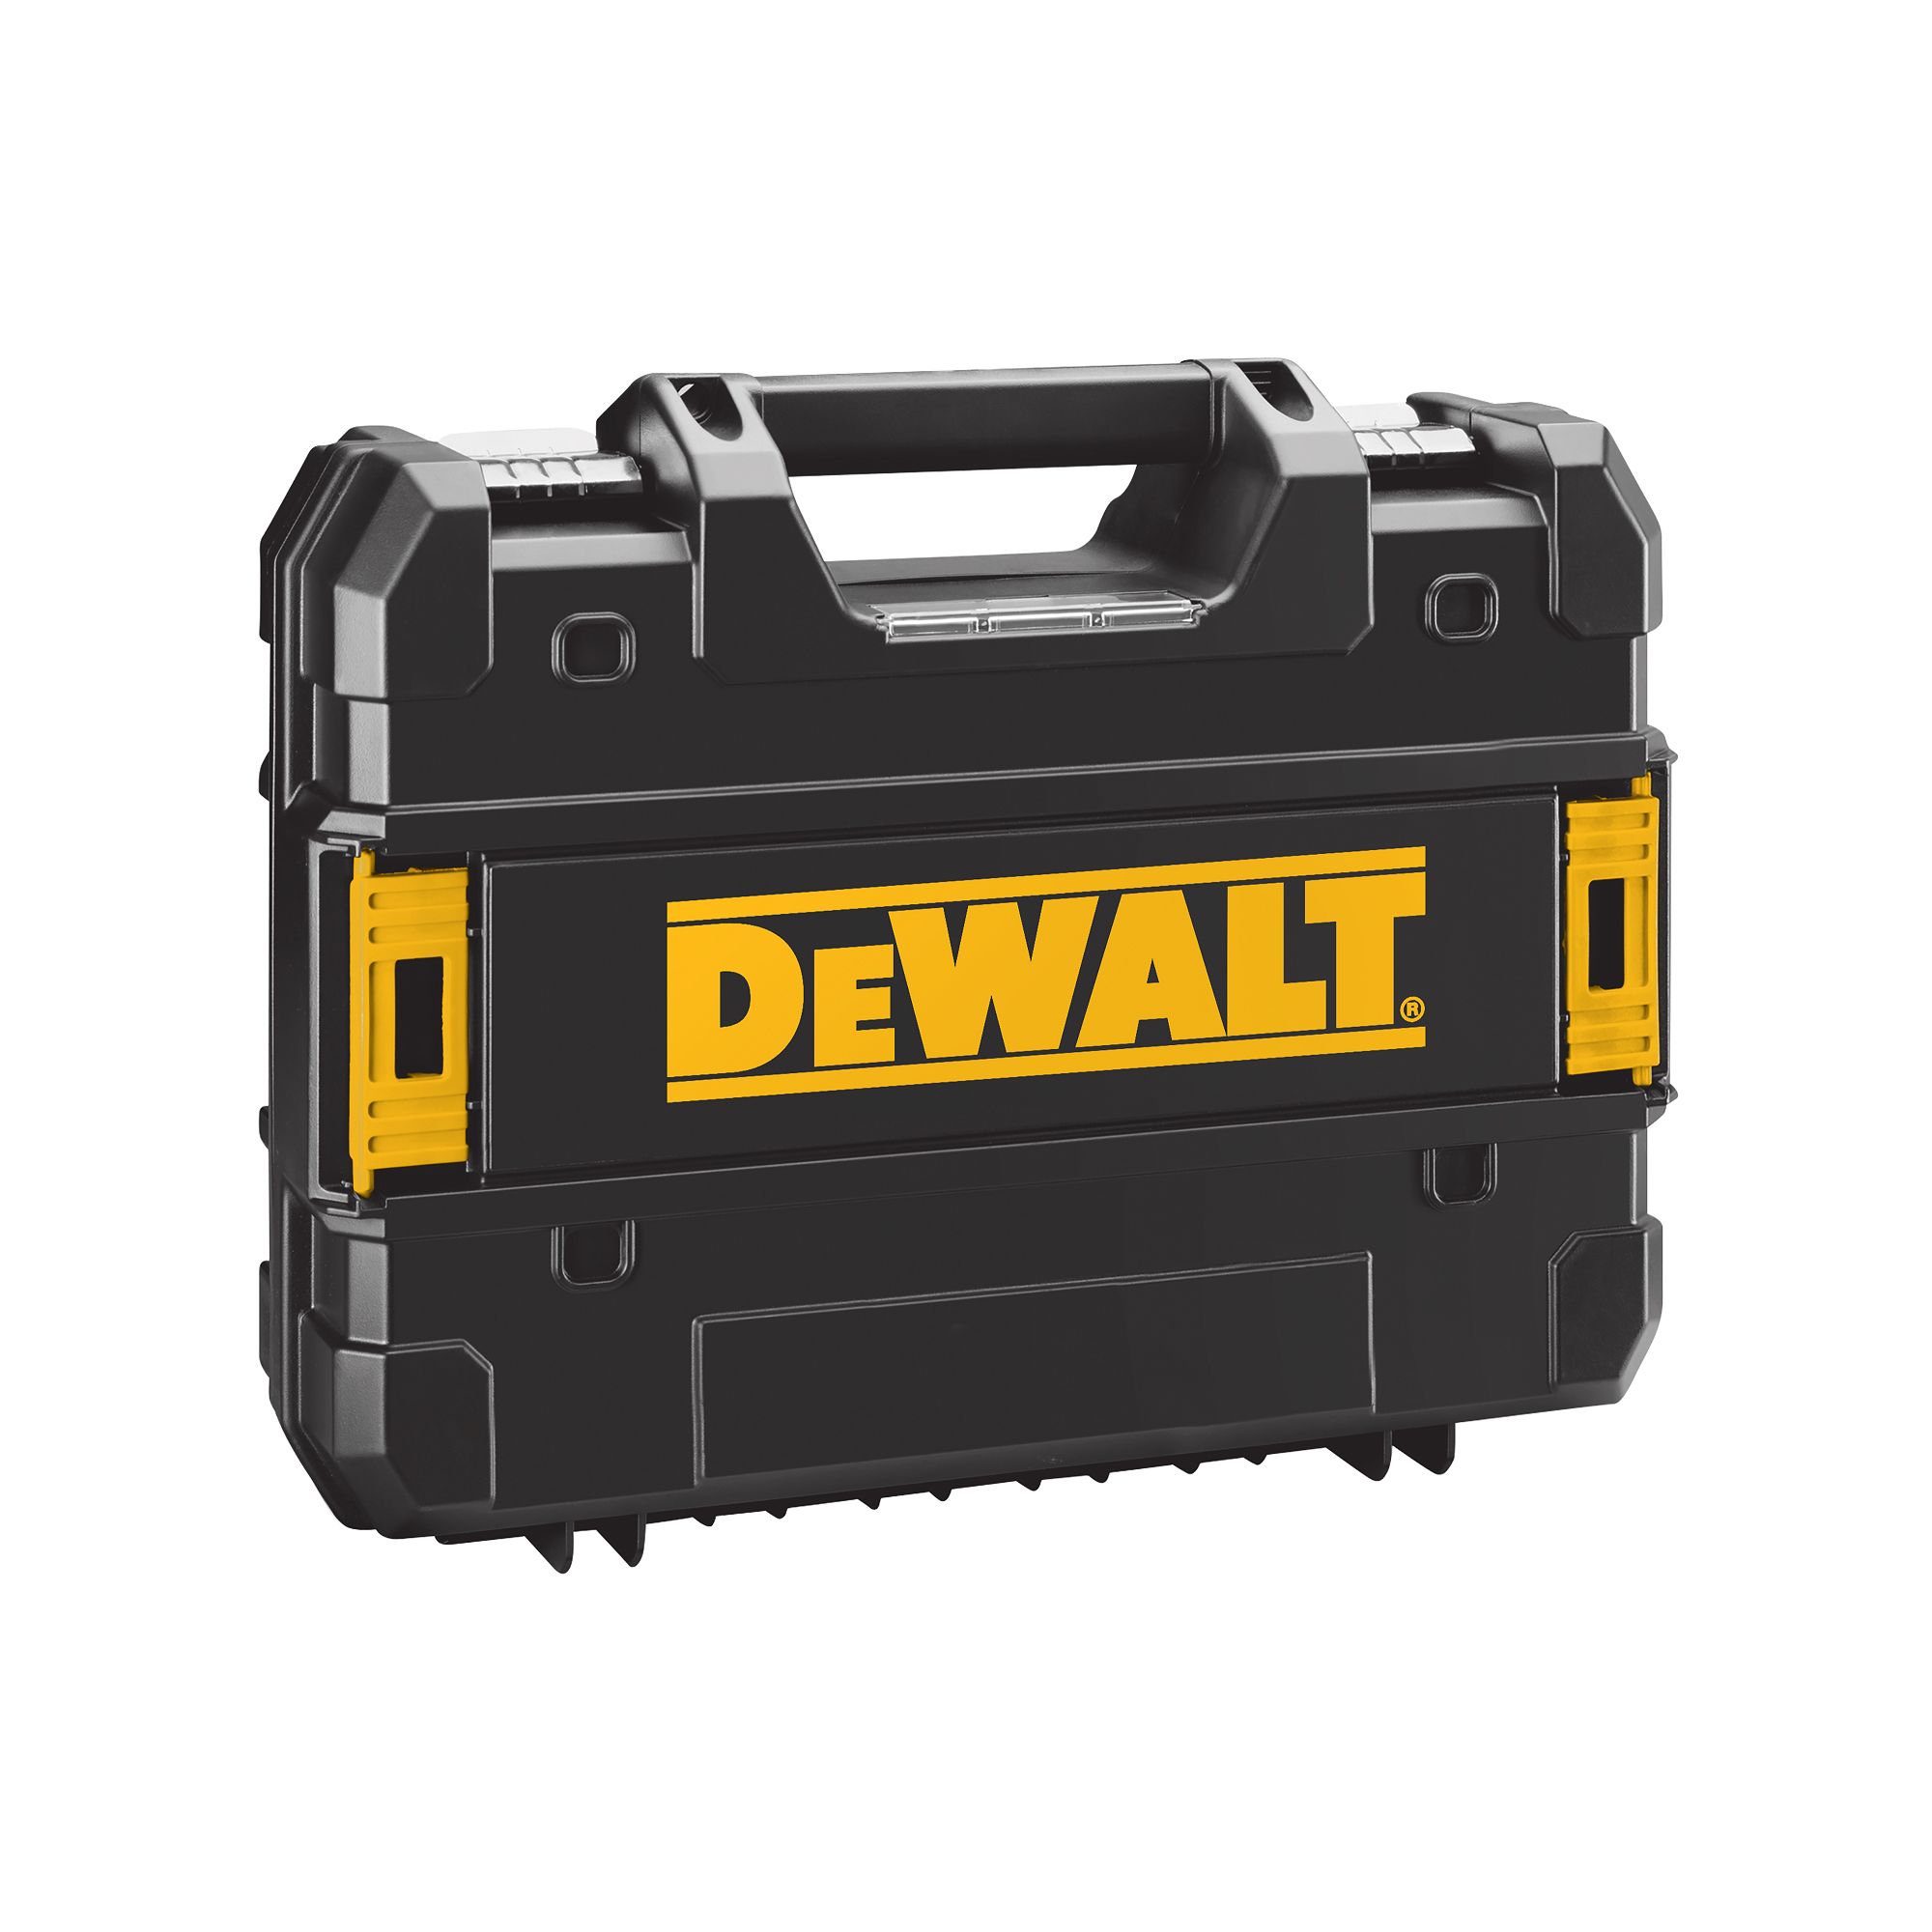 DeWalt 18V 2 x 2 Li-ion Brushed Cordless Combi drill DCD776D2T- GB